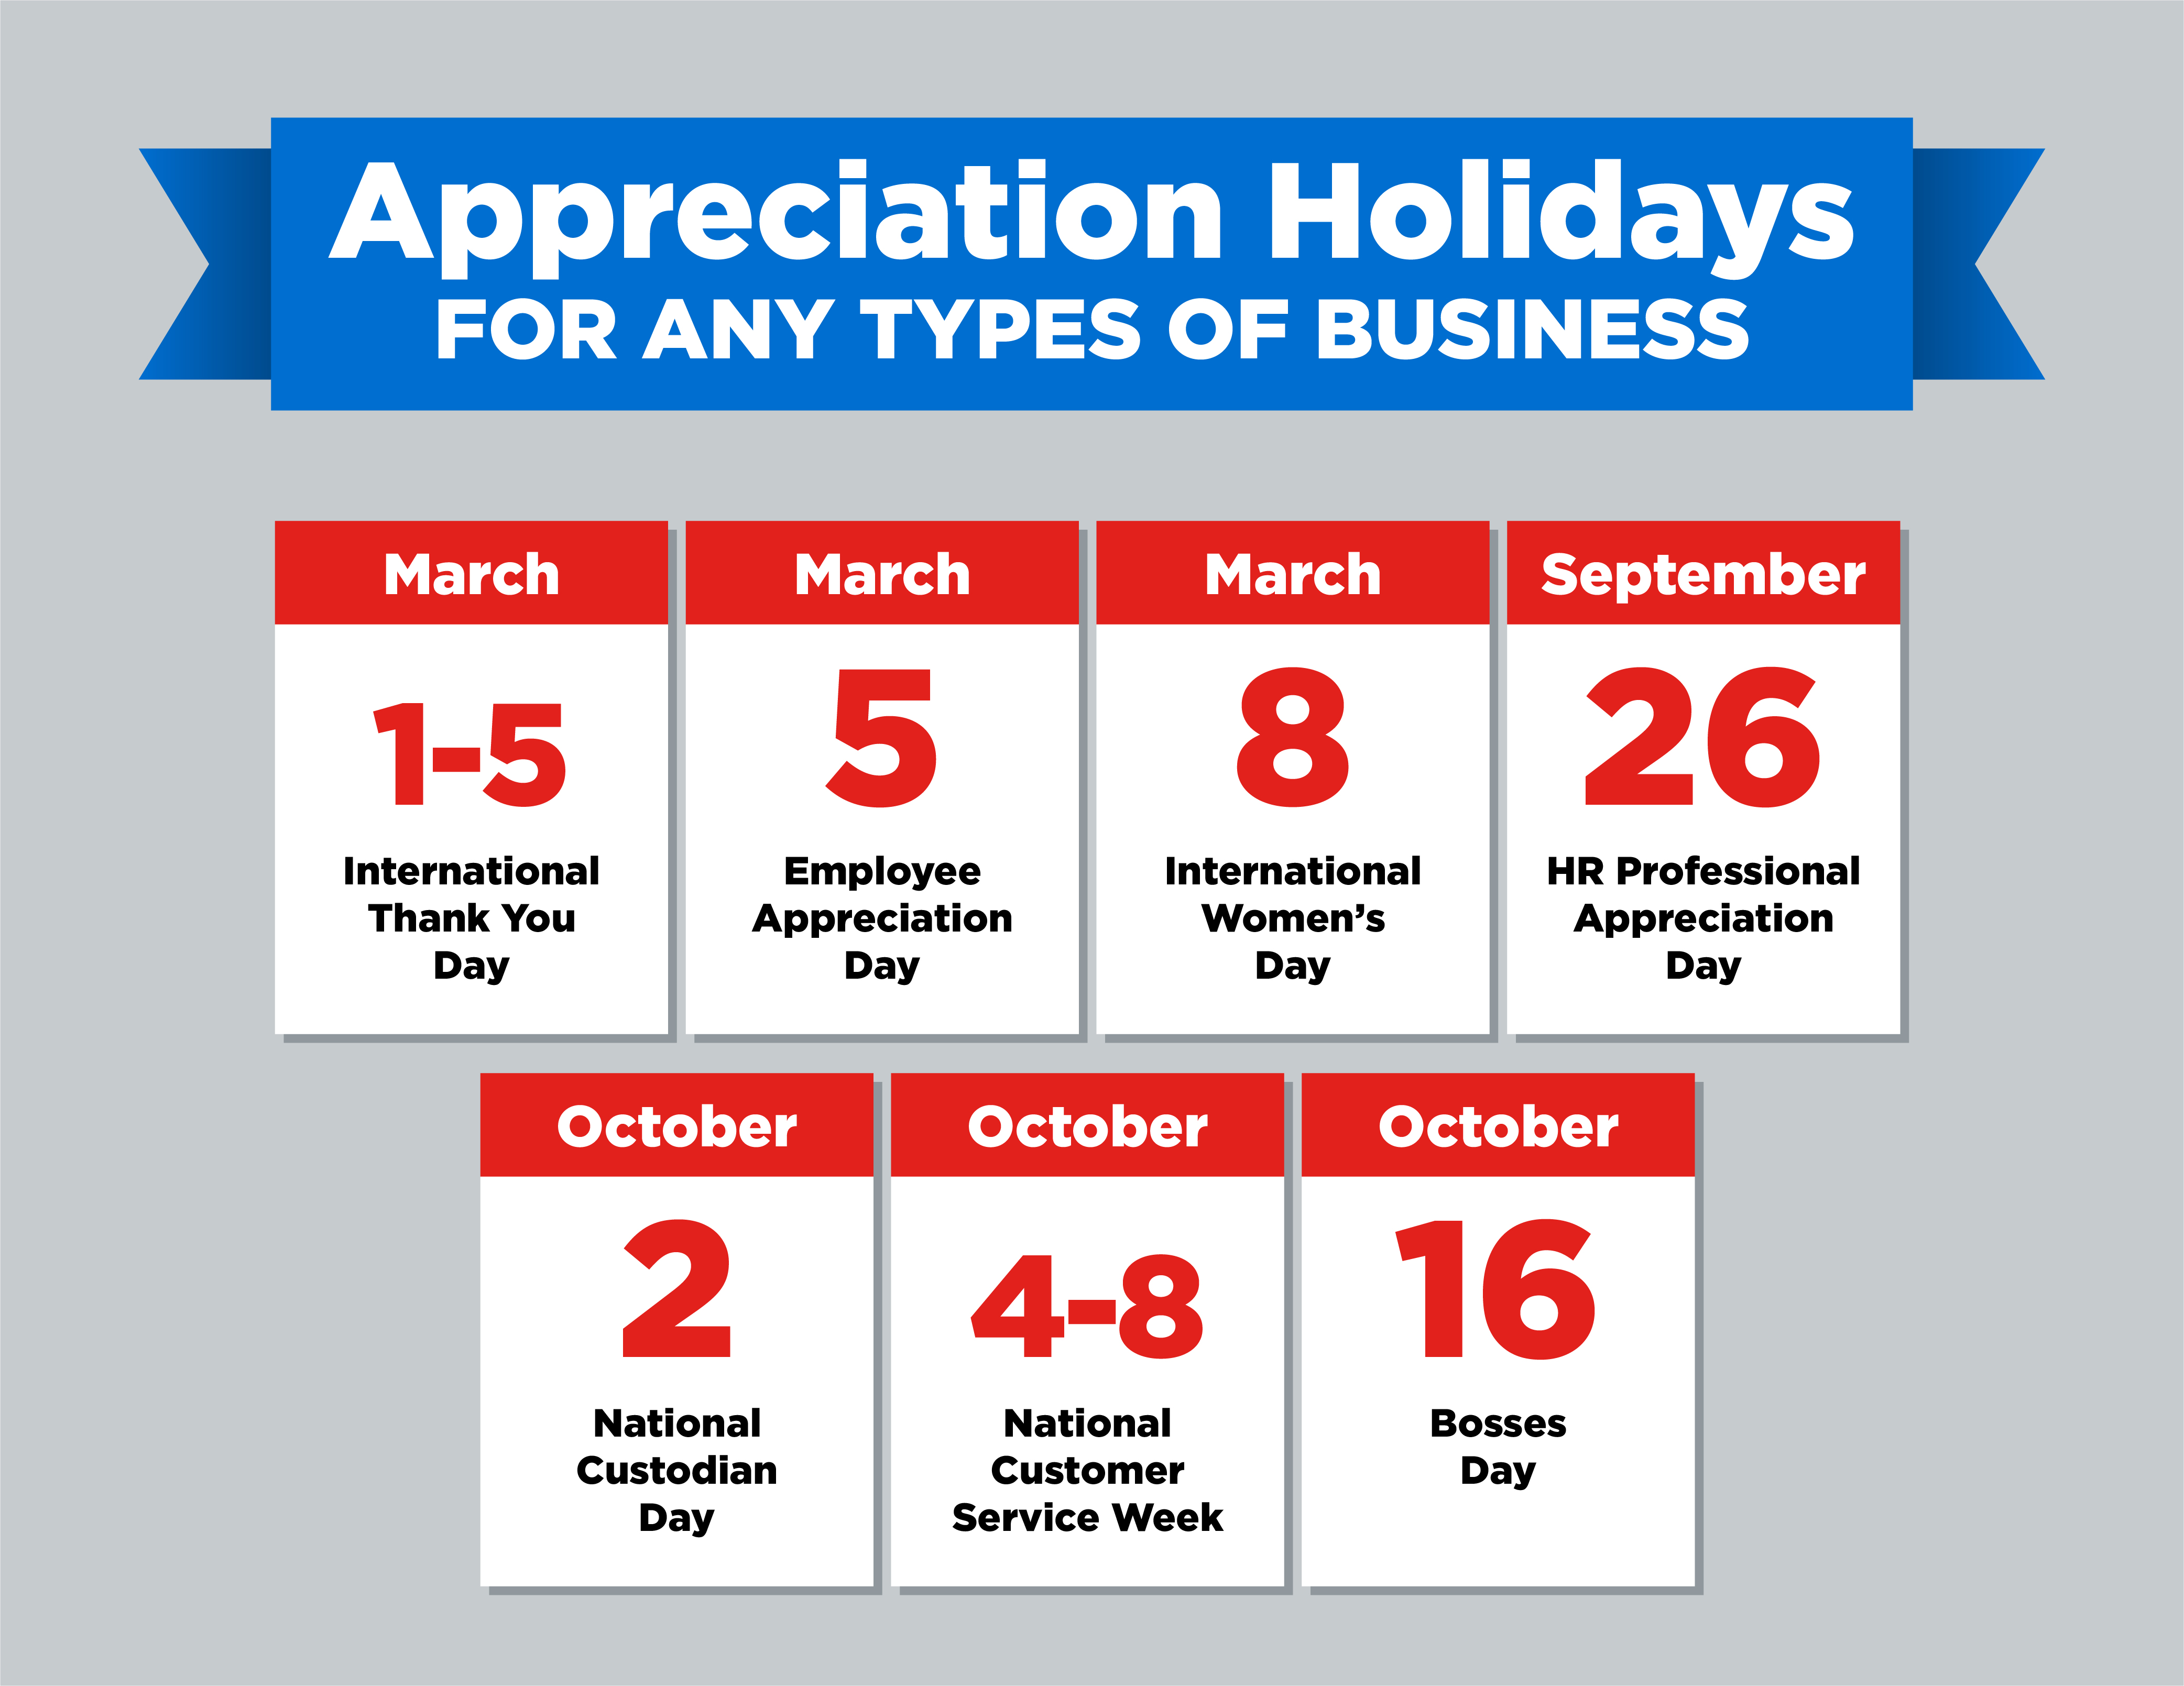 Appreciation days calendar for all business types